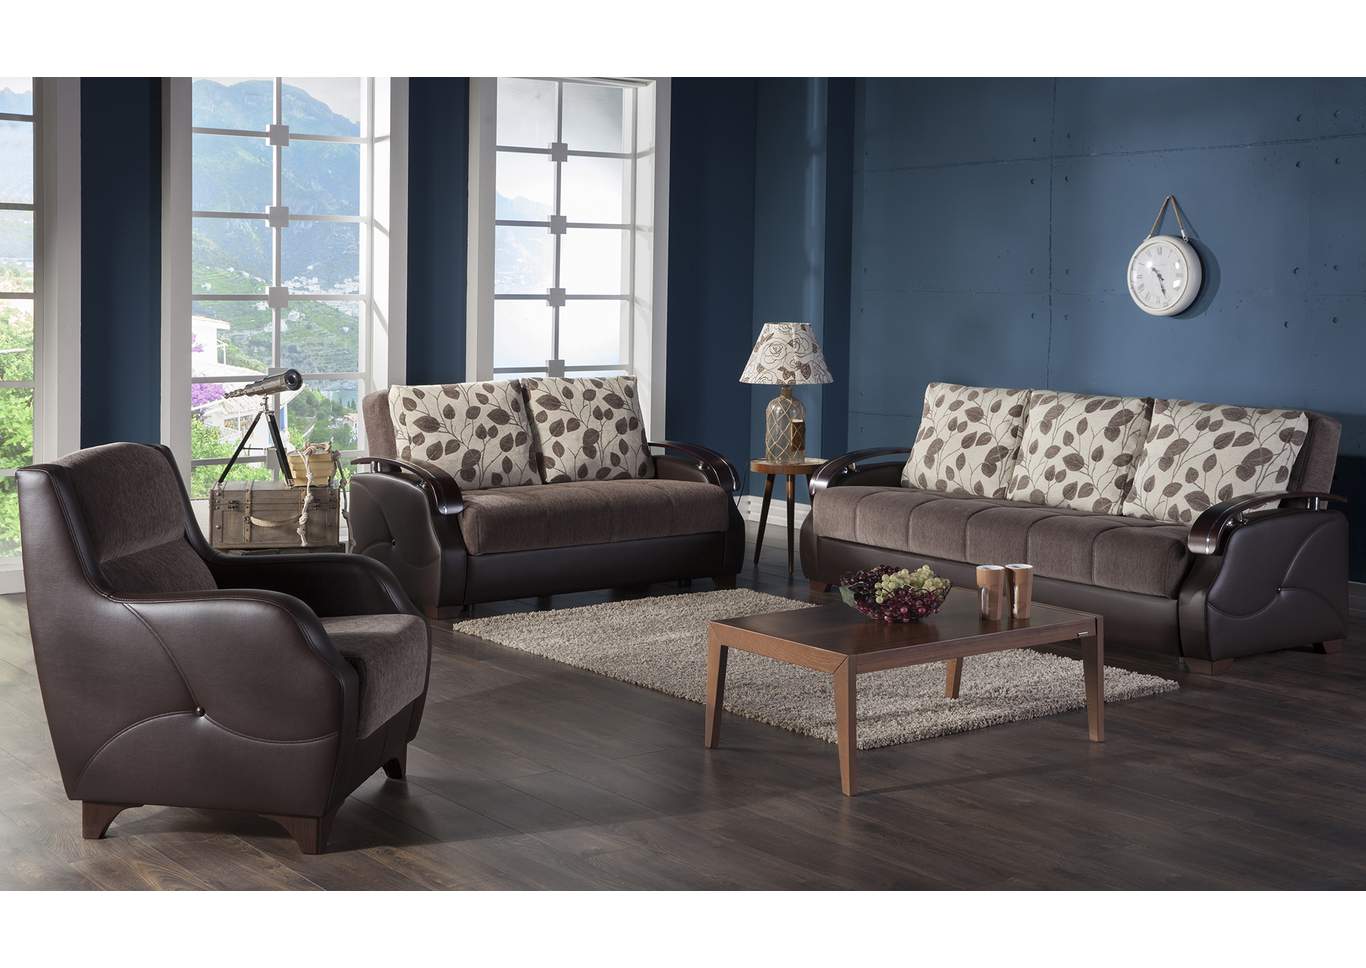 Costa Armoni Brown 3 Seat Sleeper Sofa,Hudson Furniture & Bedding